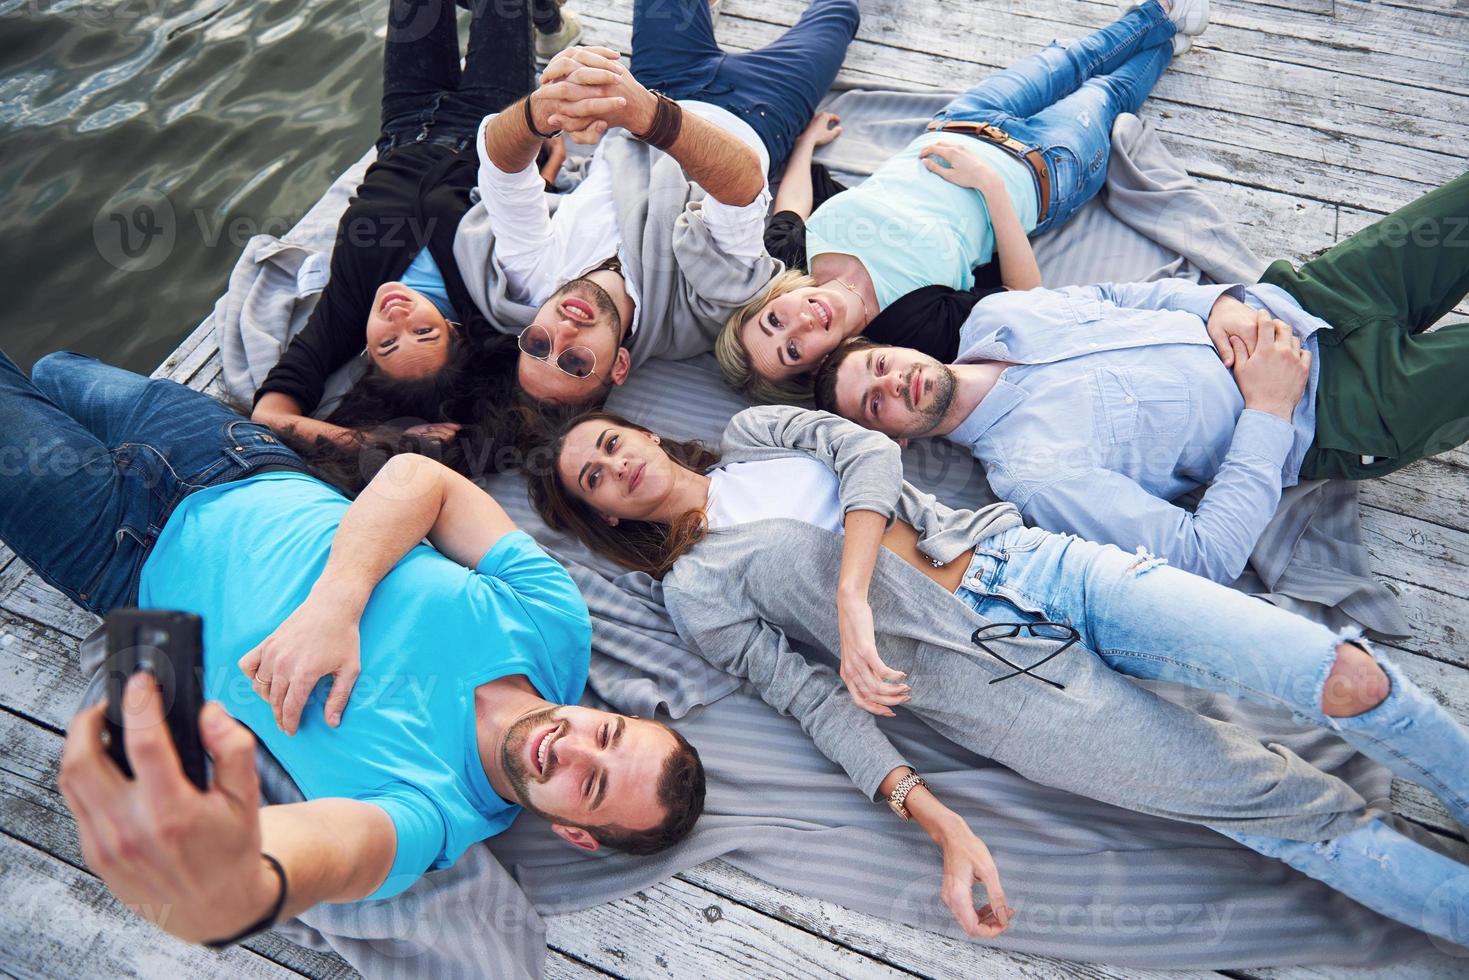 Gruppe schöner junger Leute, die Selfies machen, die auf dem Pier liegen, die besten Freunde von Mädchen und Jungen mit Vergnügen Konzept schafft emotionales Leben der Menschen. foto